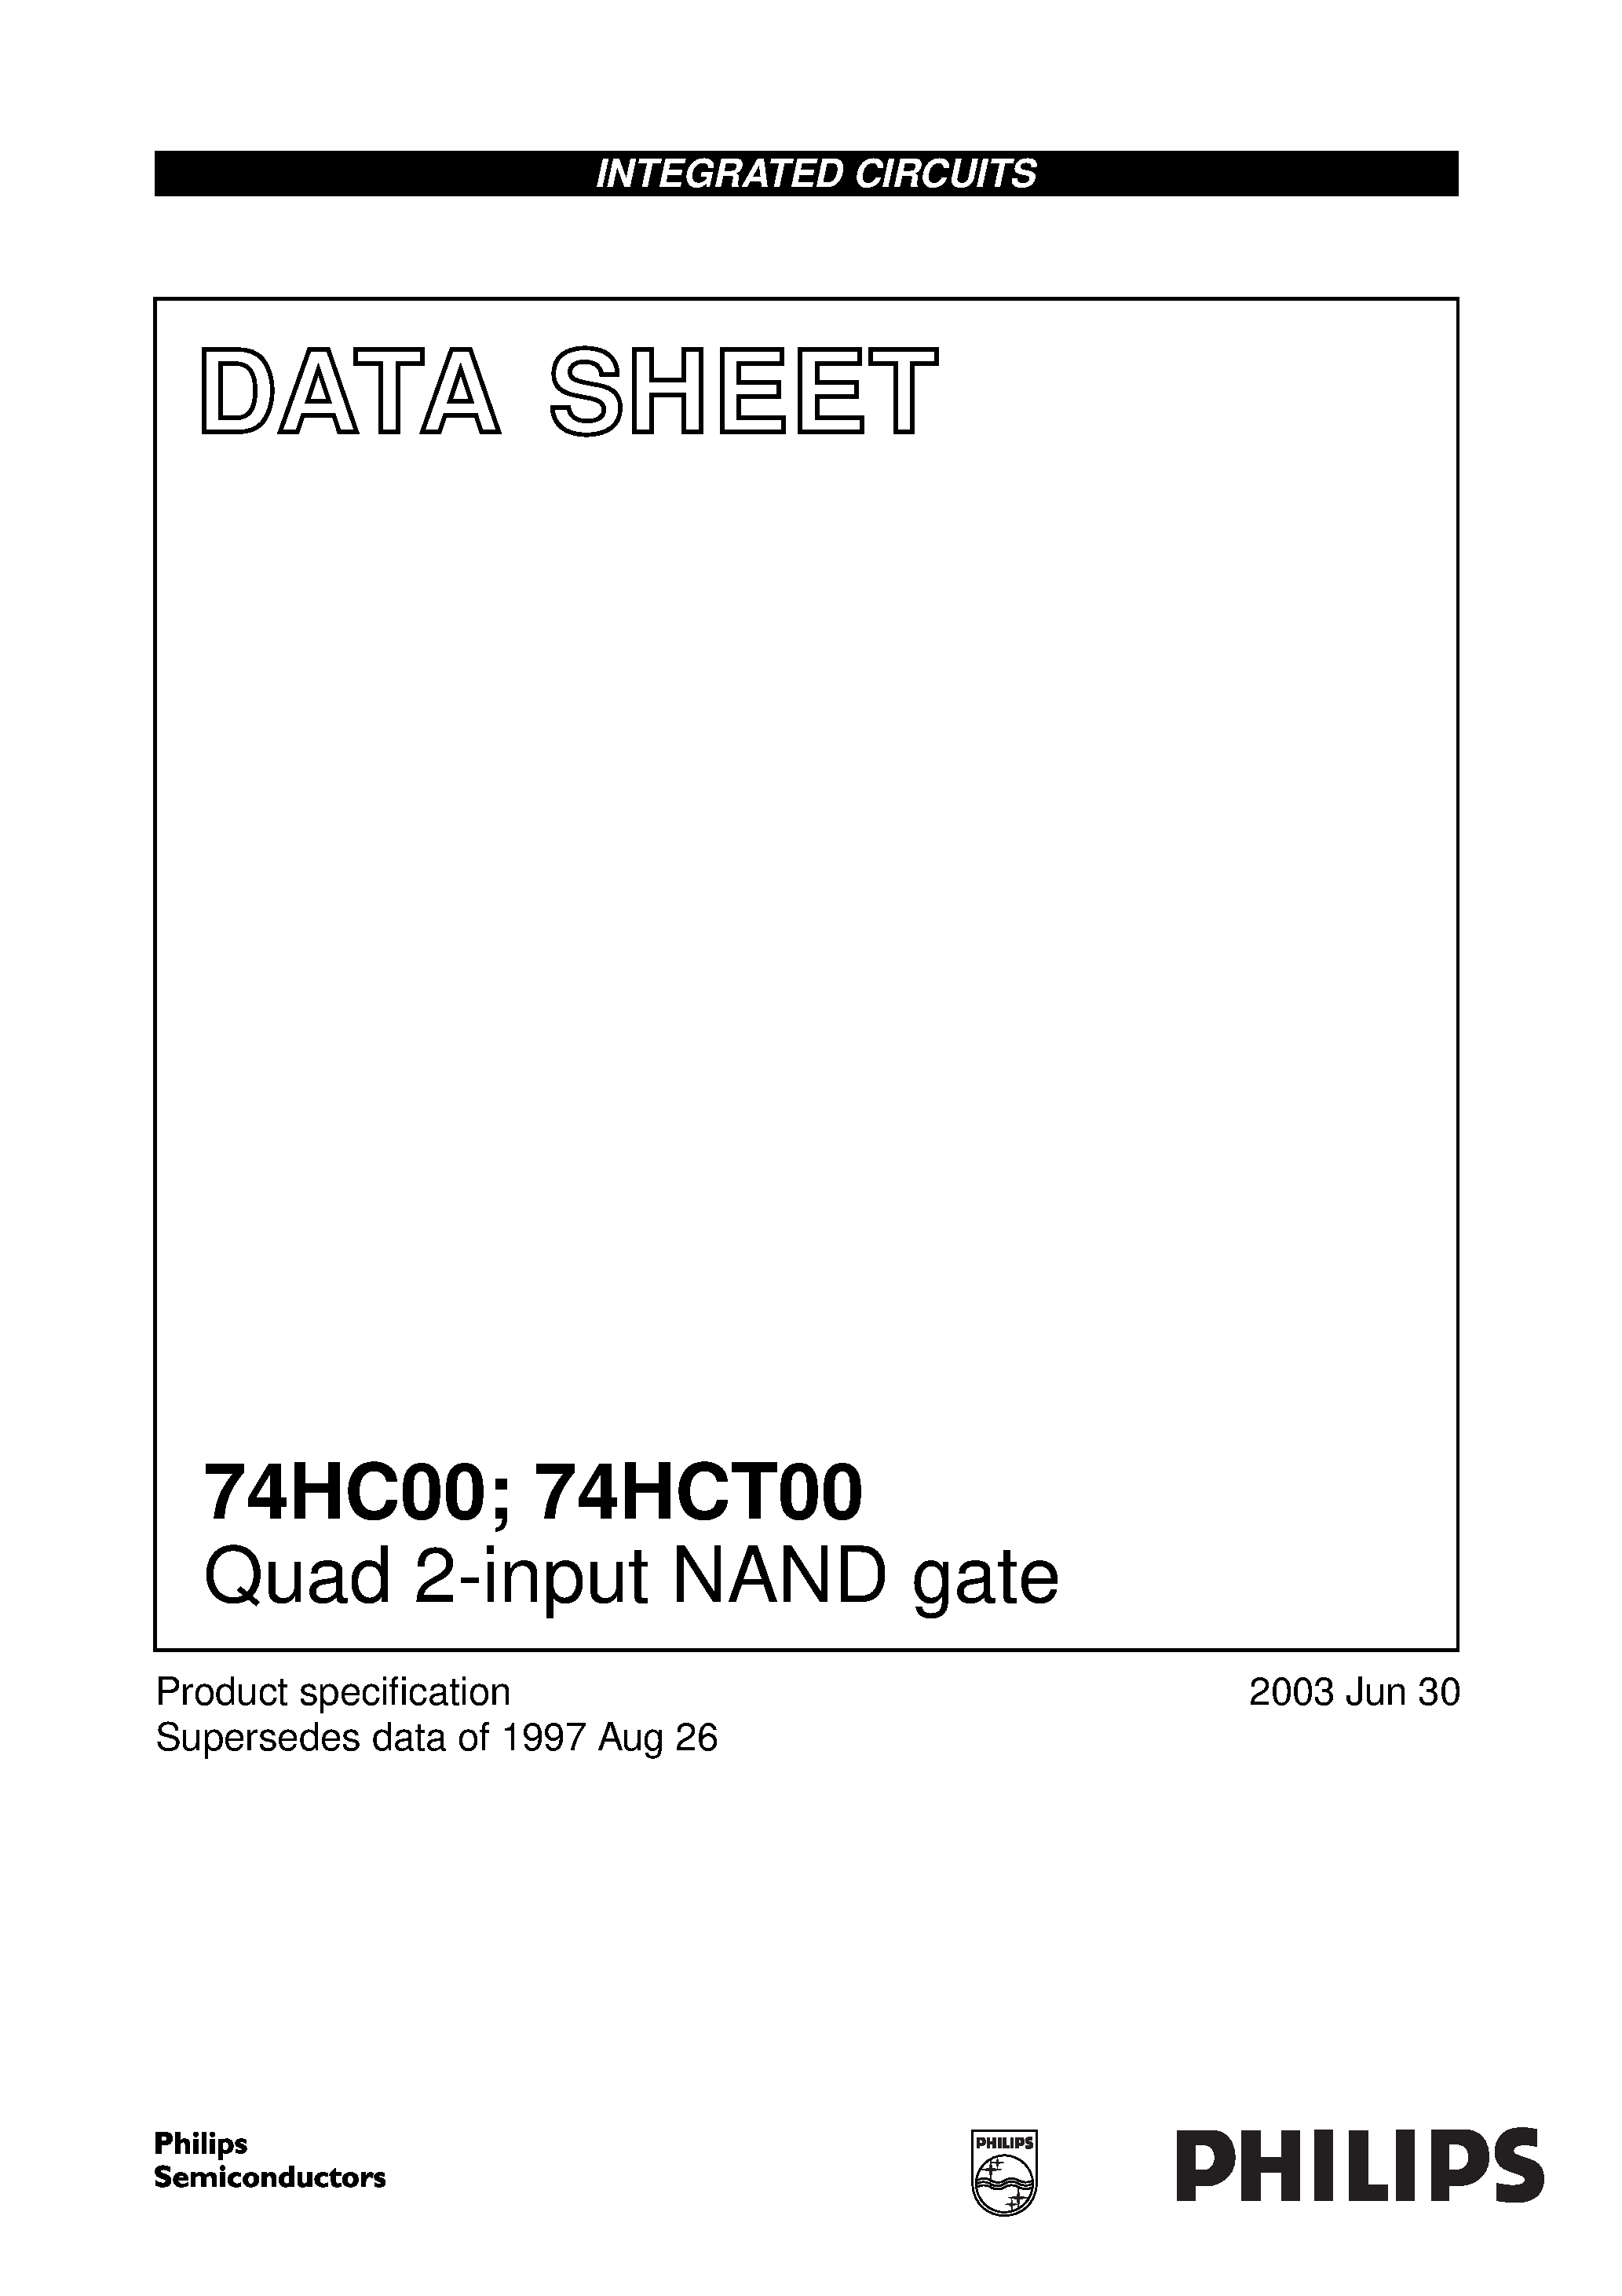 Даташит 74HC00BQ - Quad 2-input NAND gate страница 1